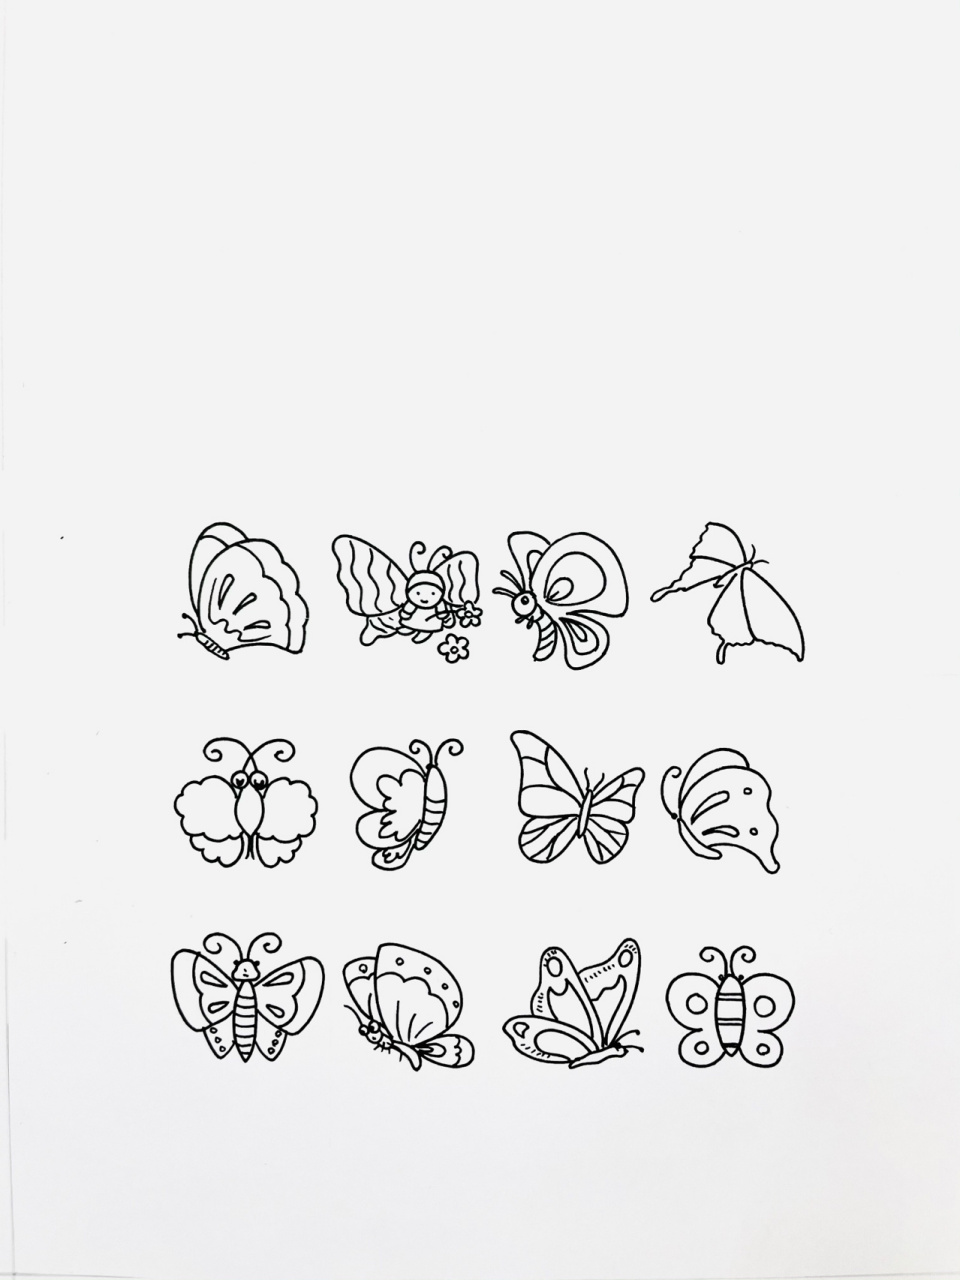 动物简笔画 简单 蝴蝶图片